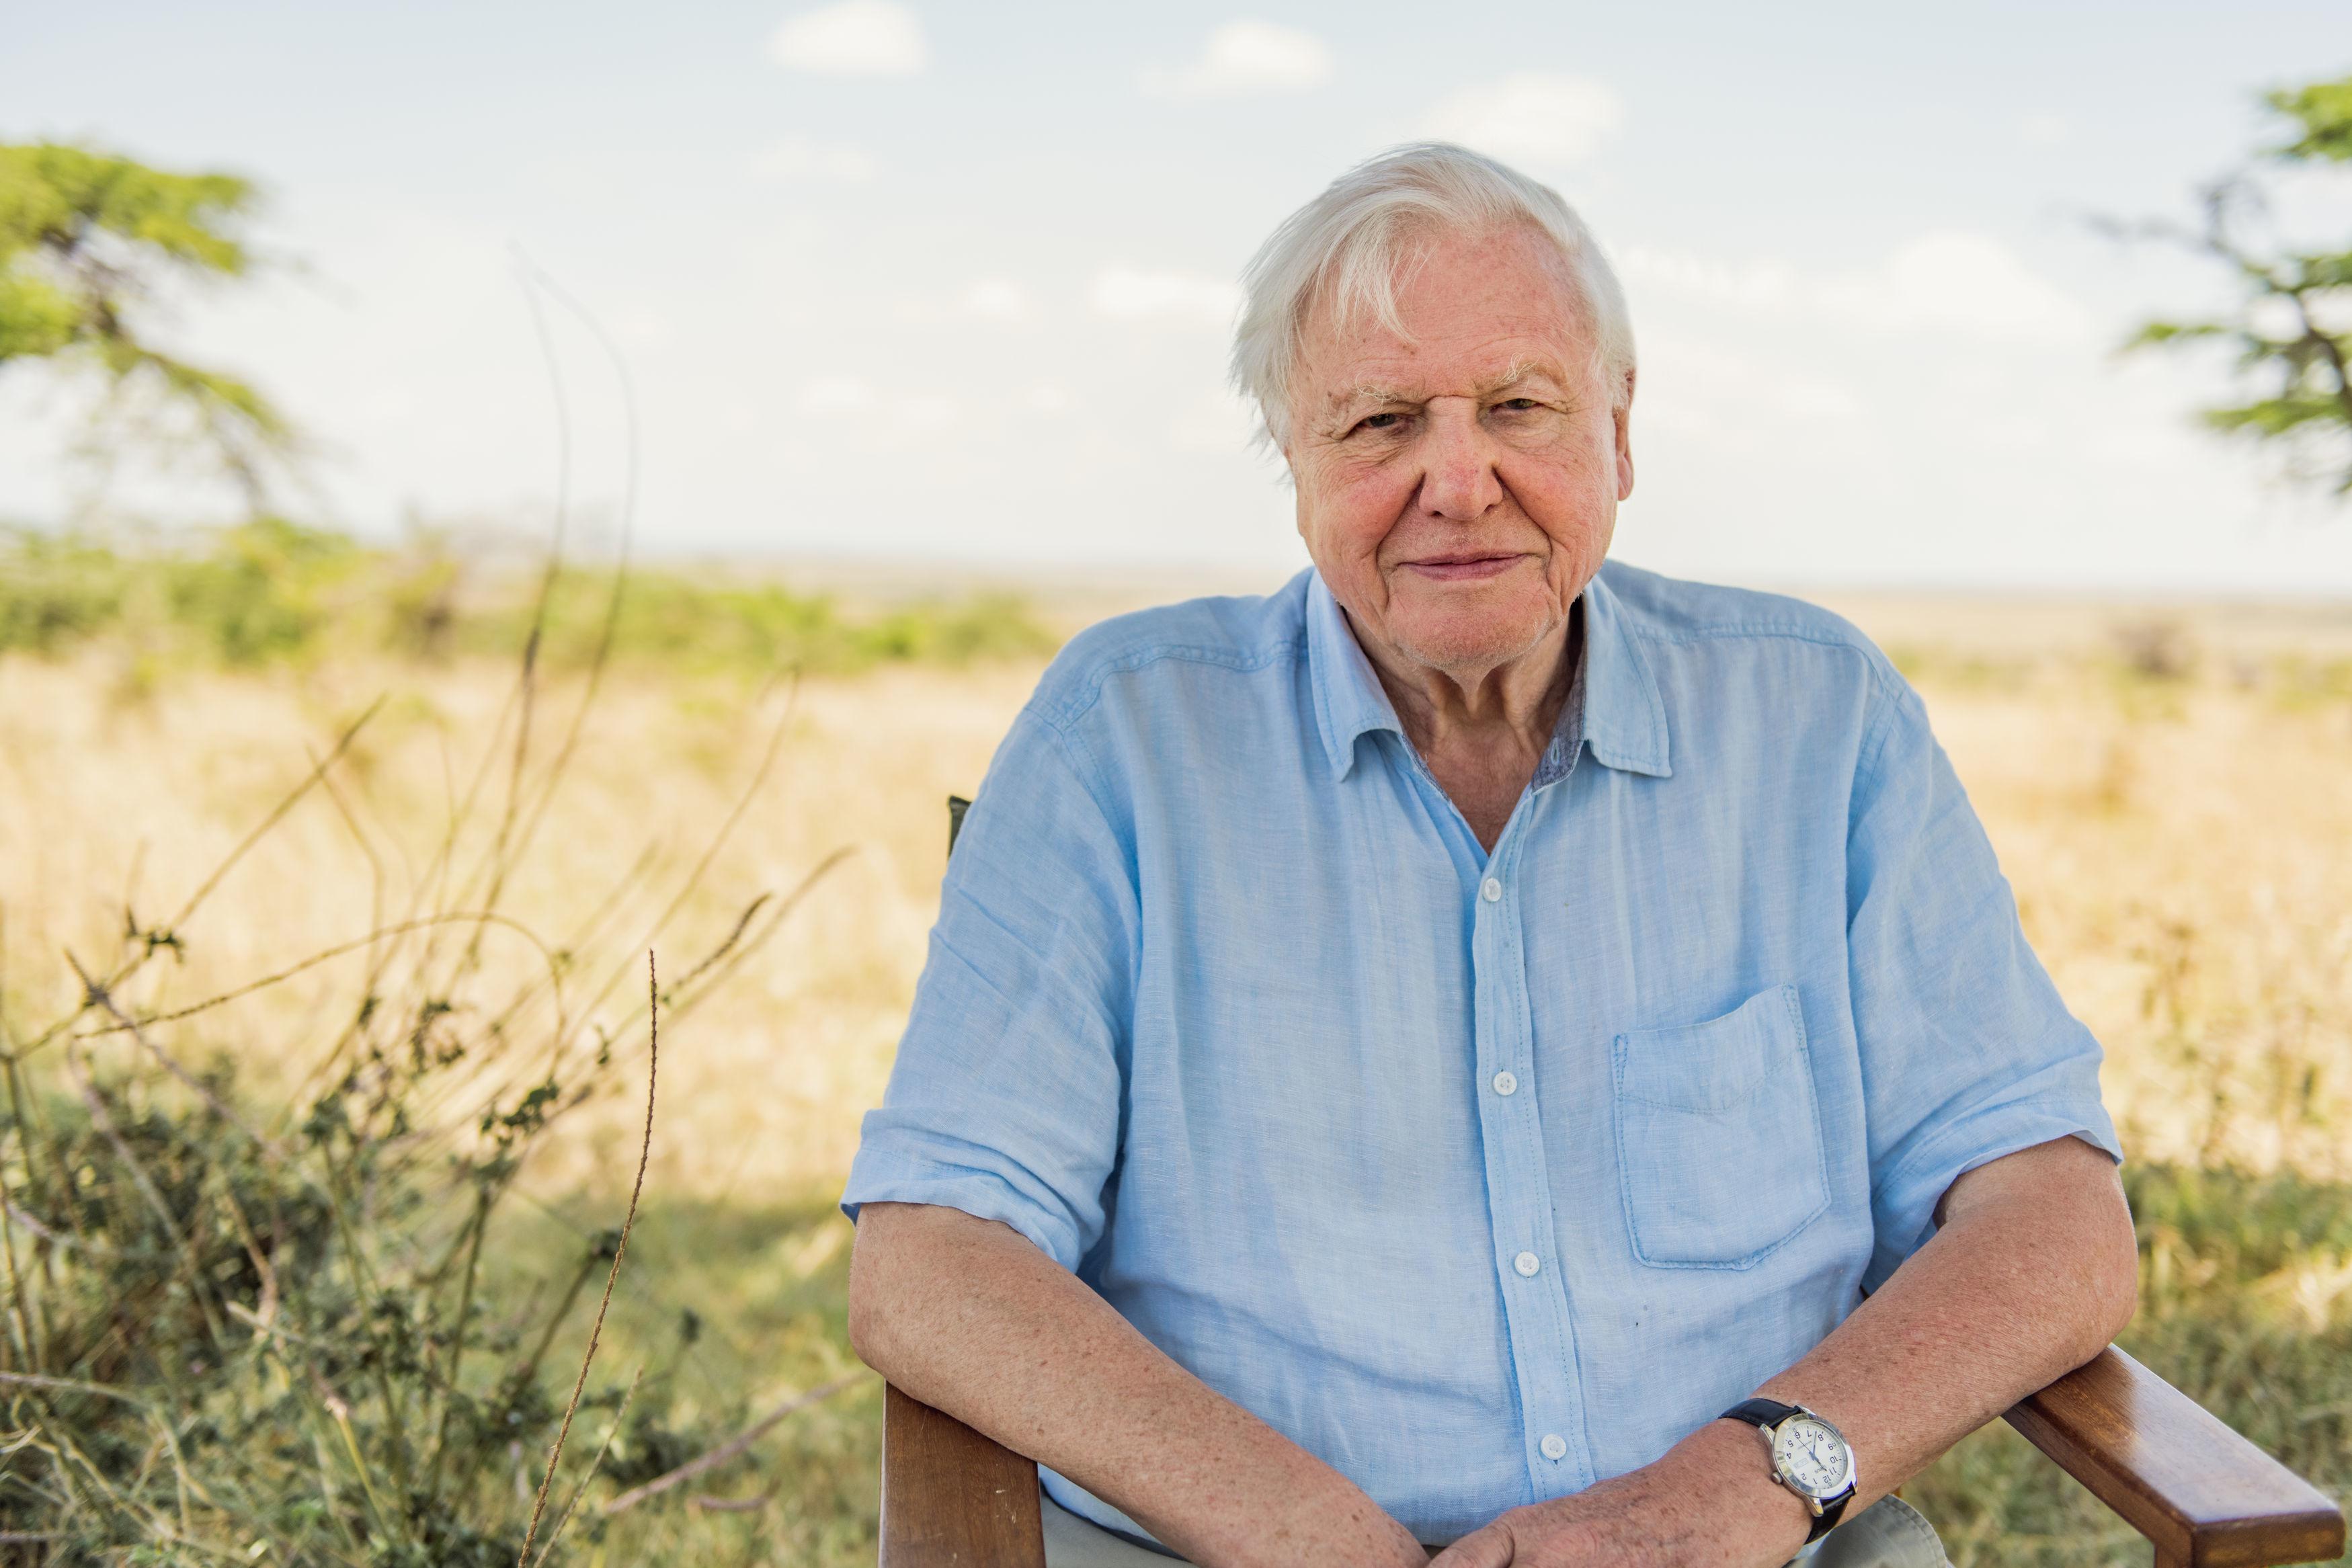 David Attenborough természettudóst a Föld bajnoka címmel tüntette ki az ENSZ